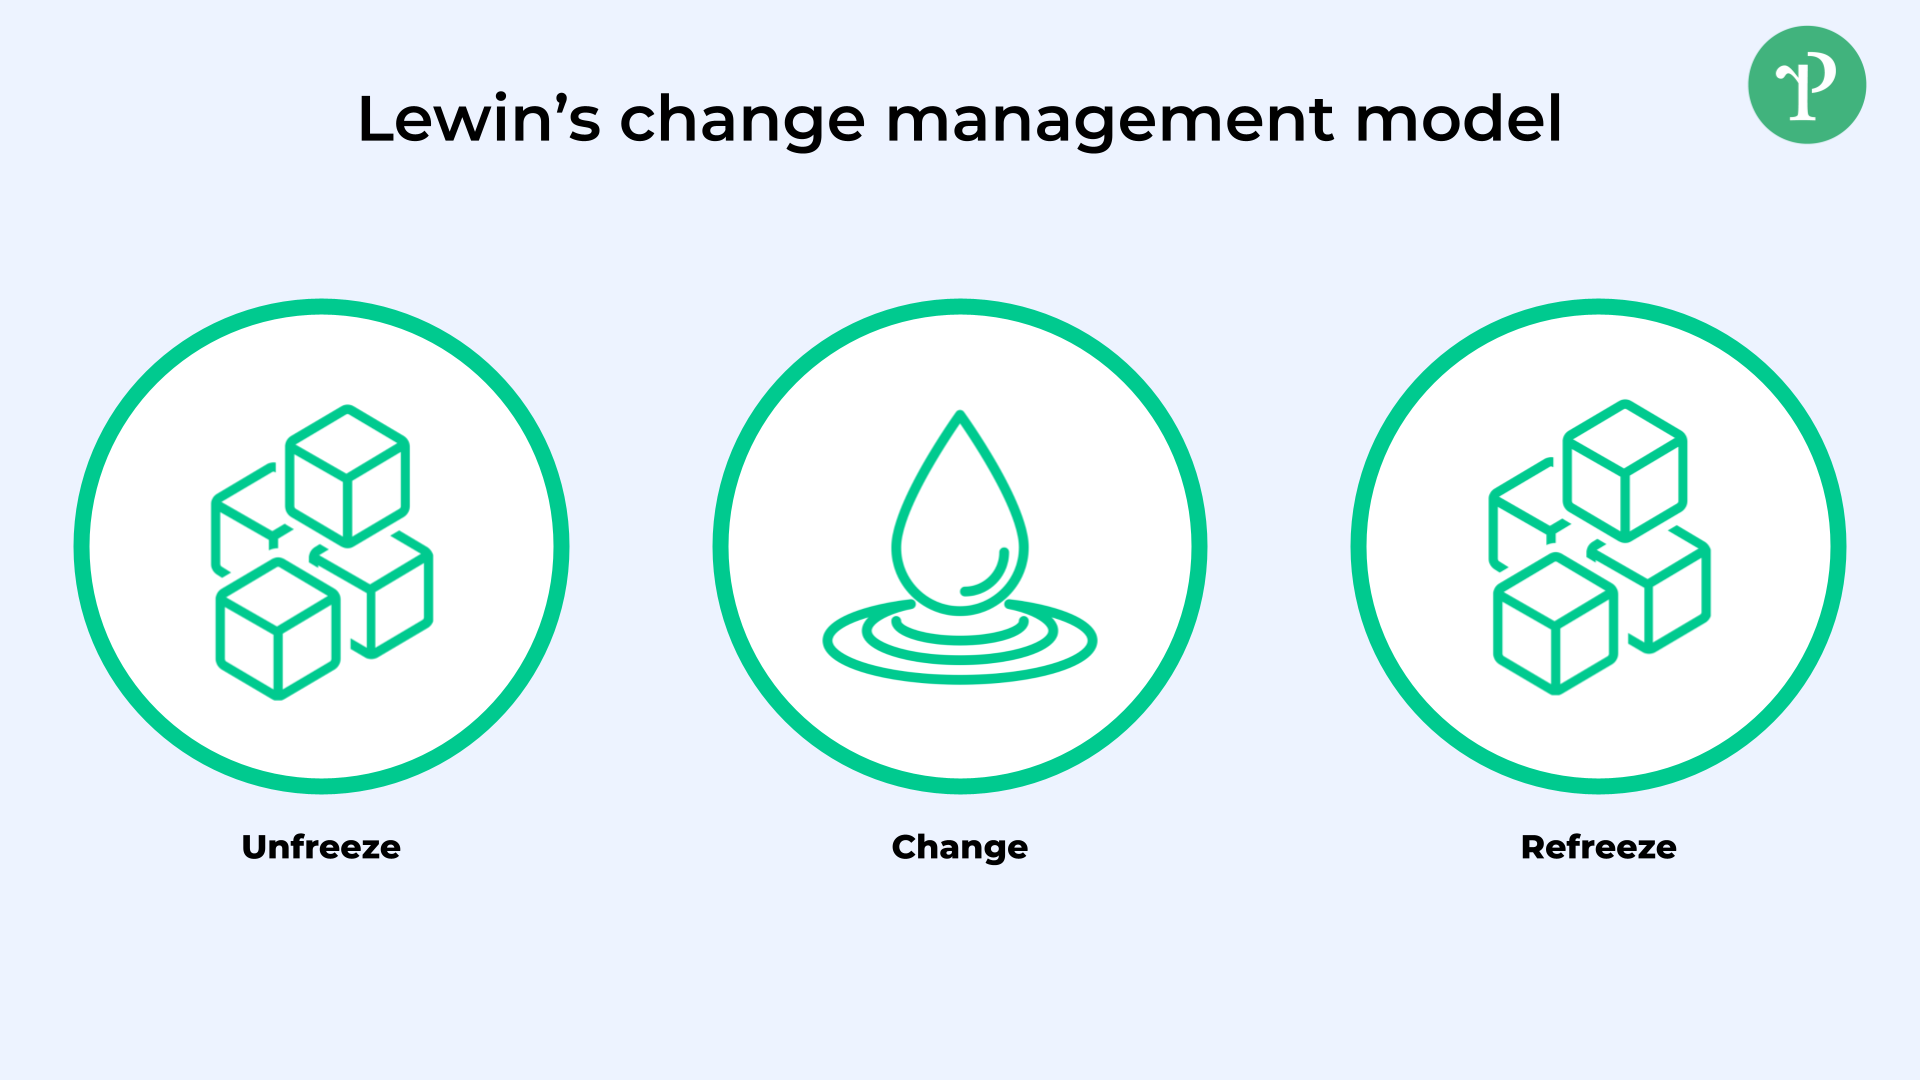 Modello di Lewin per la gestione del cambiamento | Right People Group